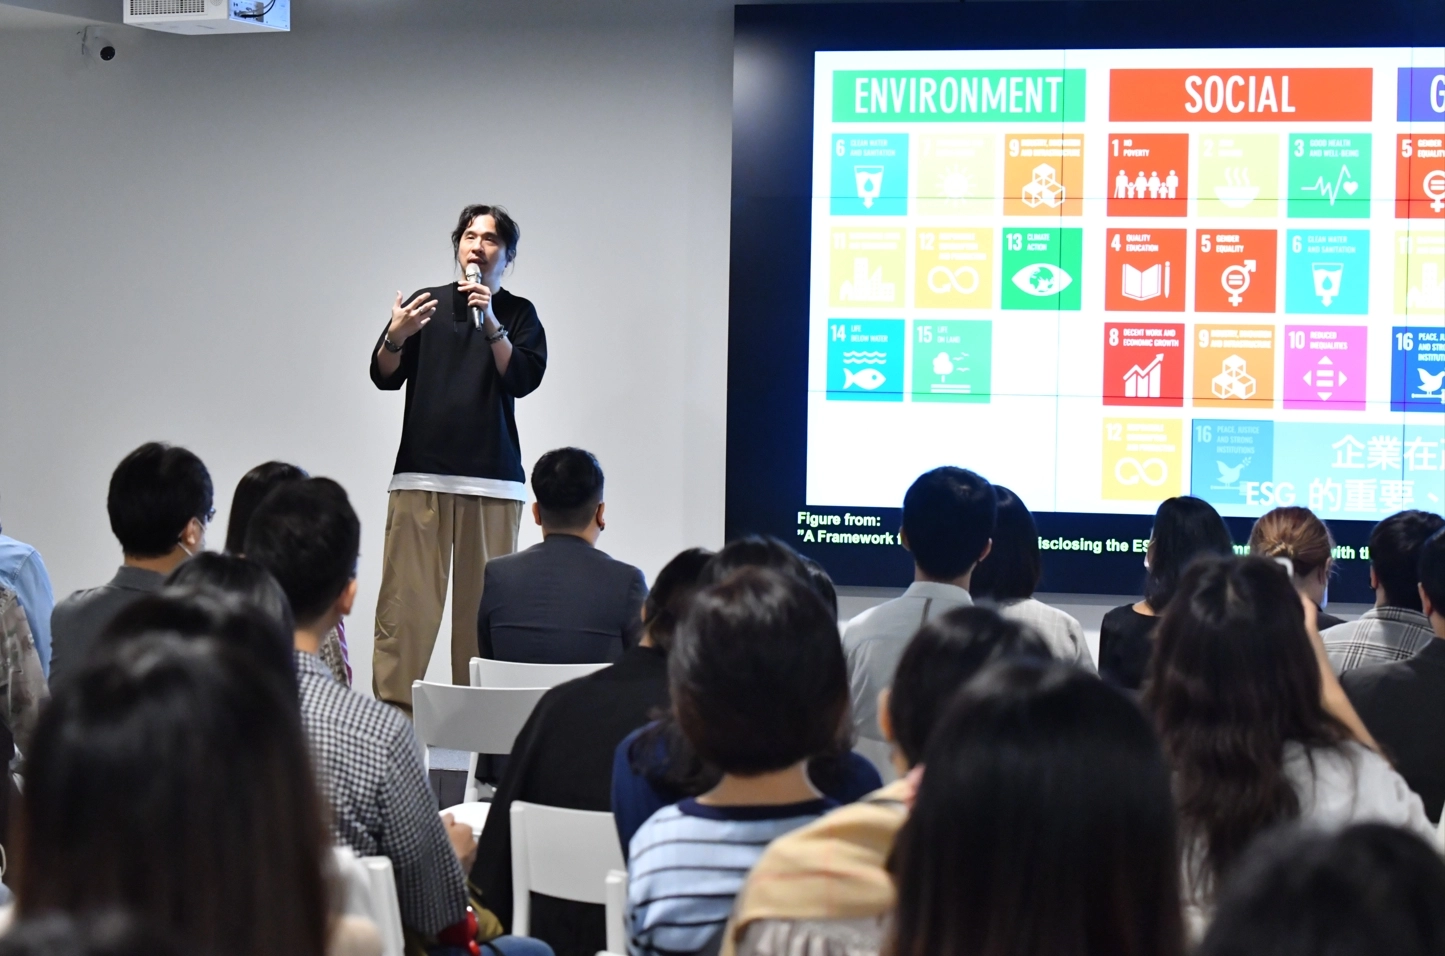 葉丙成教授認為，永續是當今重要議題，商業宣傳要更重視ESG(環境保護、社會責任、公司治理)，凸顯企業對地球永續所作出的努力。